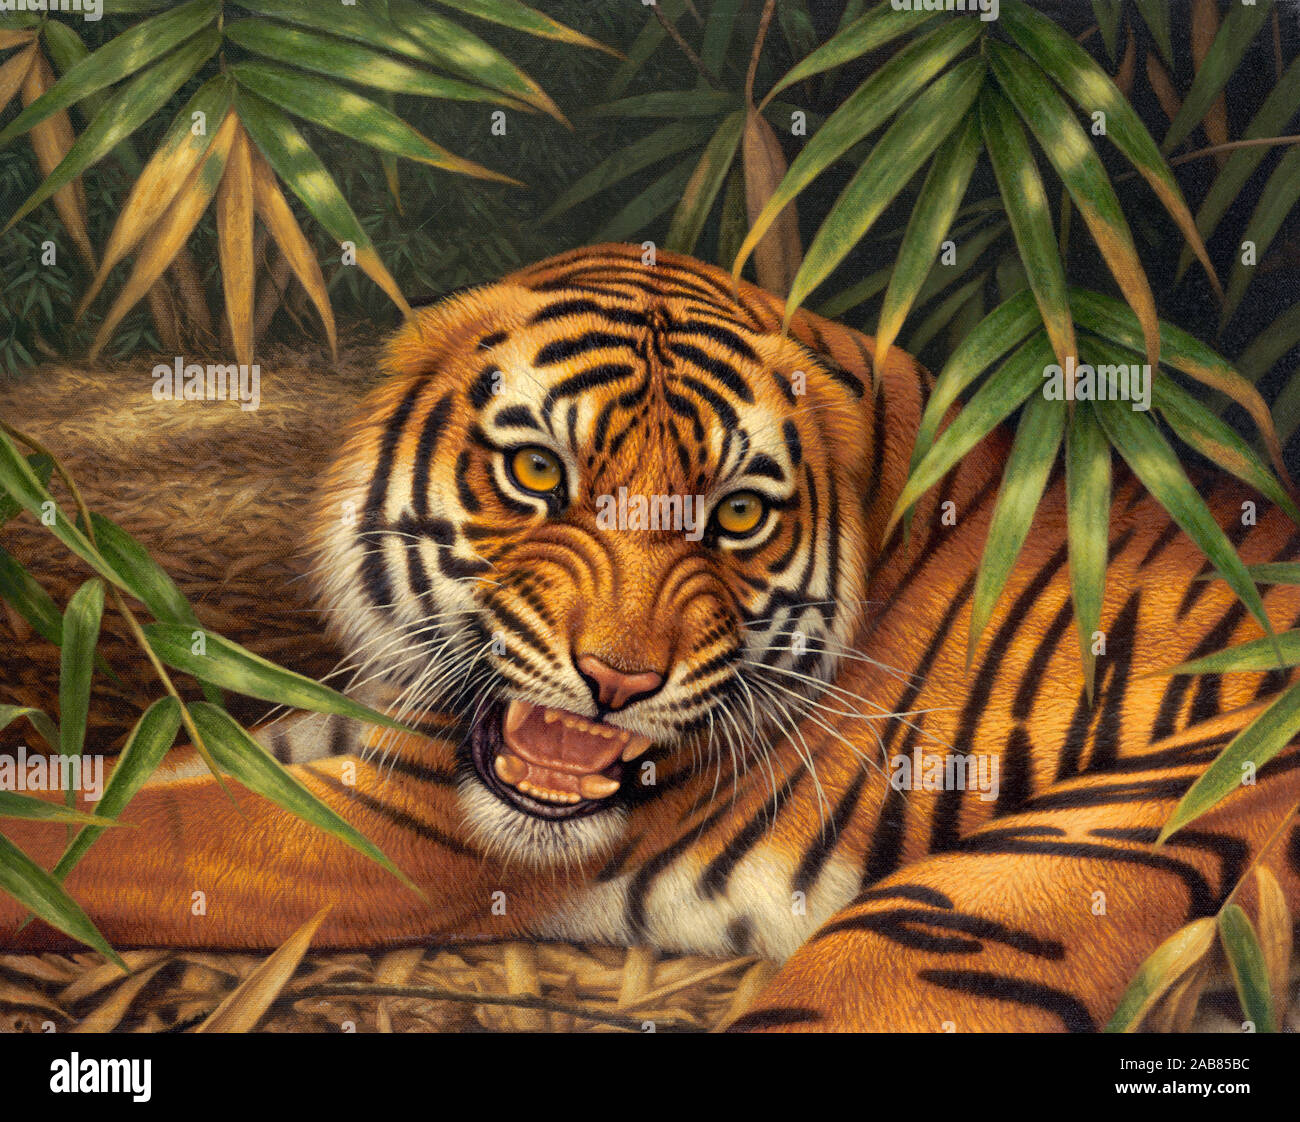 Gruñendo tigre de Bengala acostado en el piso del bosque Foto de stock